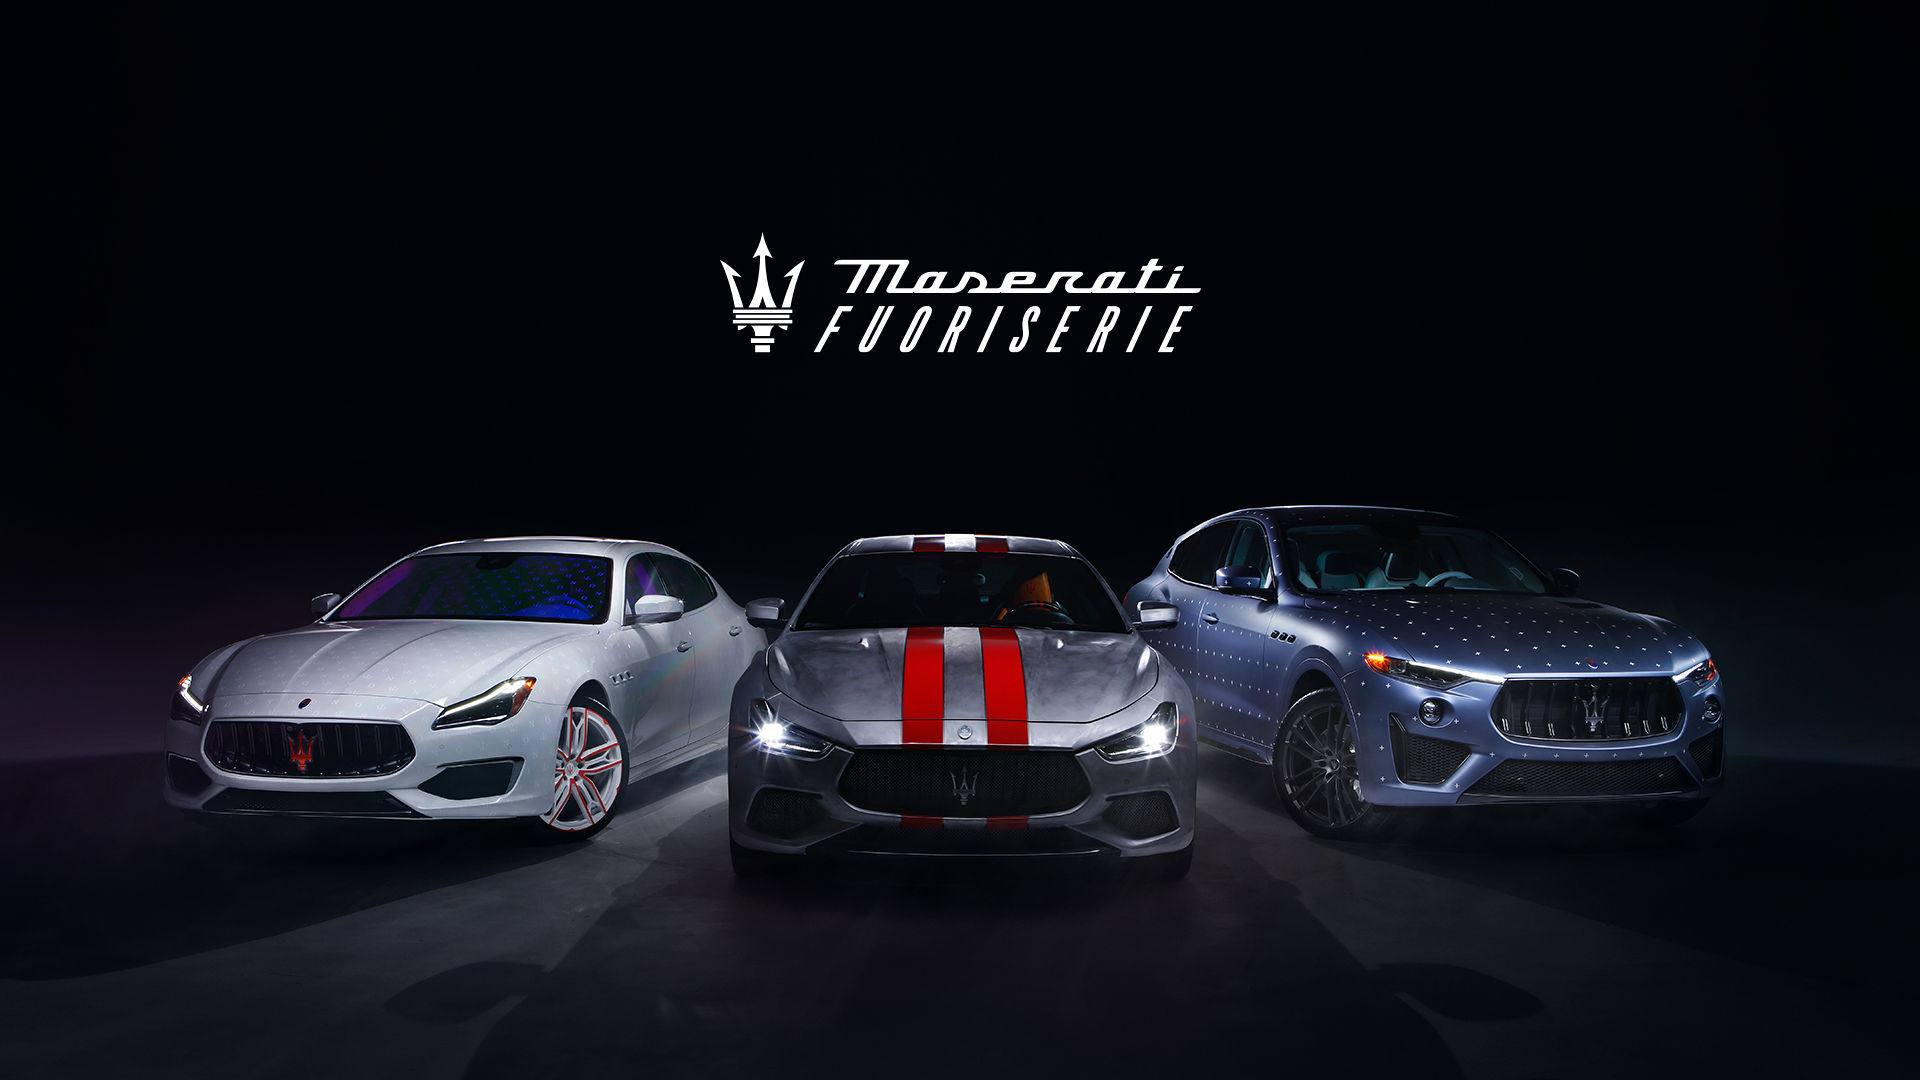 Vista frontal del Maserati Fuoriserie Unica